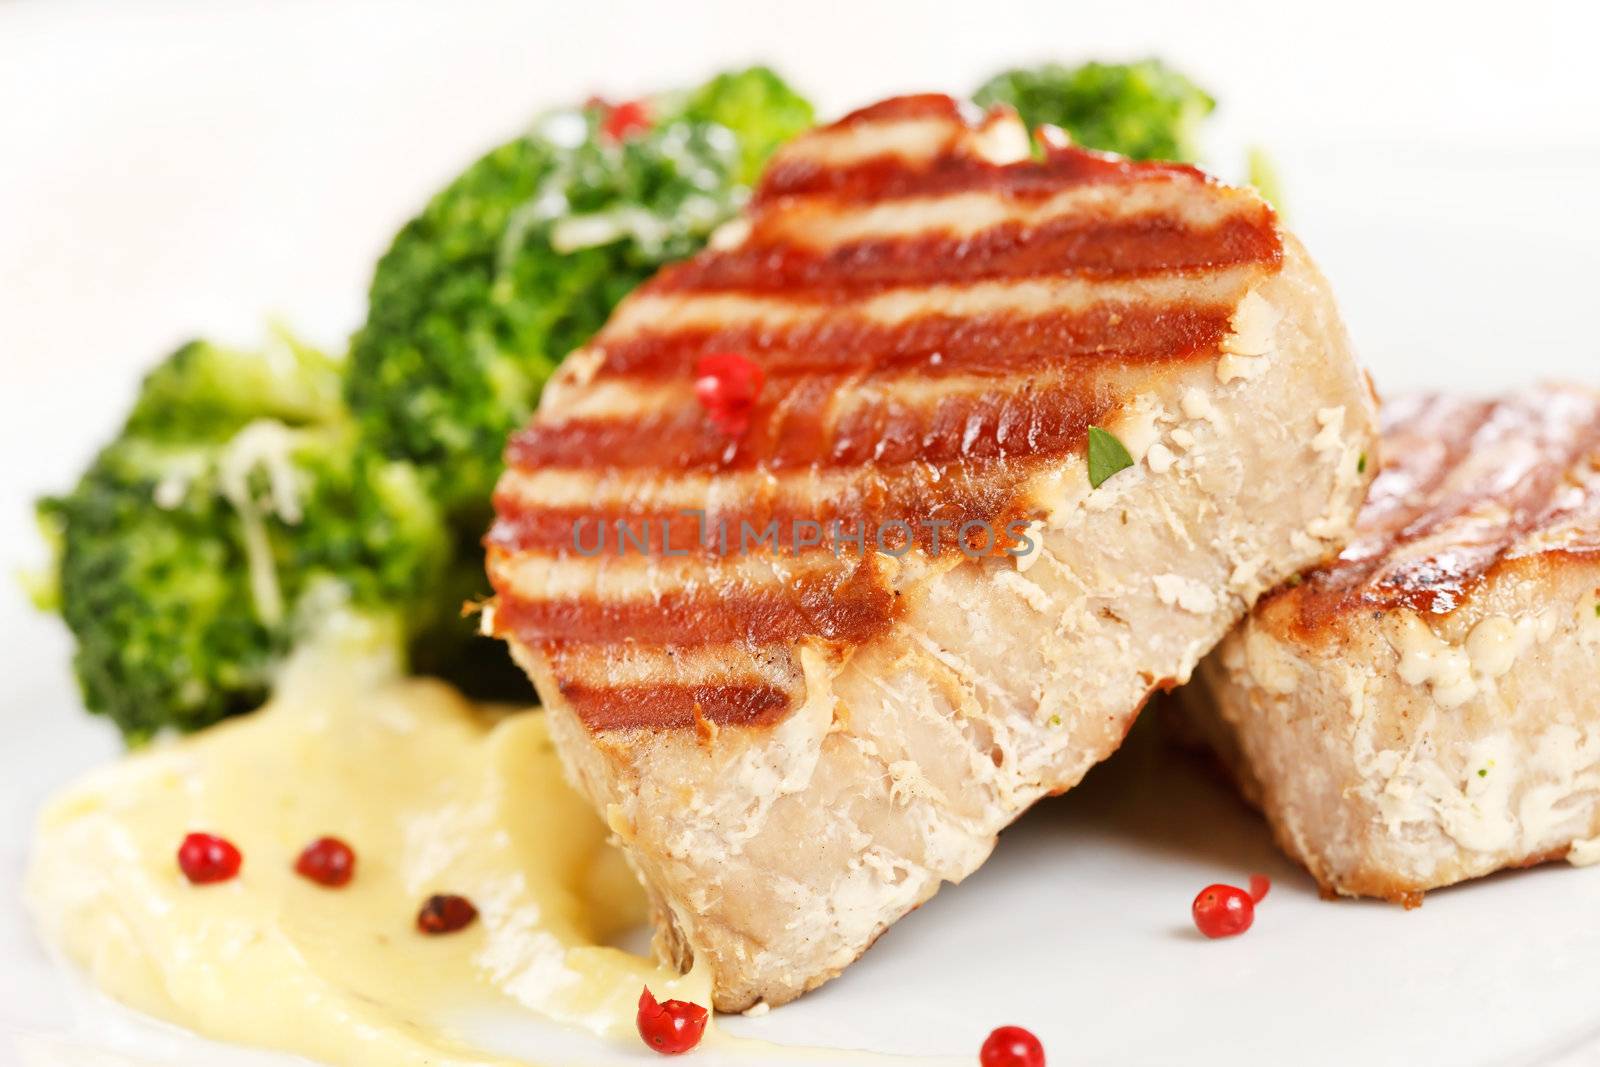 tuna steak with broccoli by shebeko